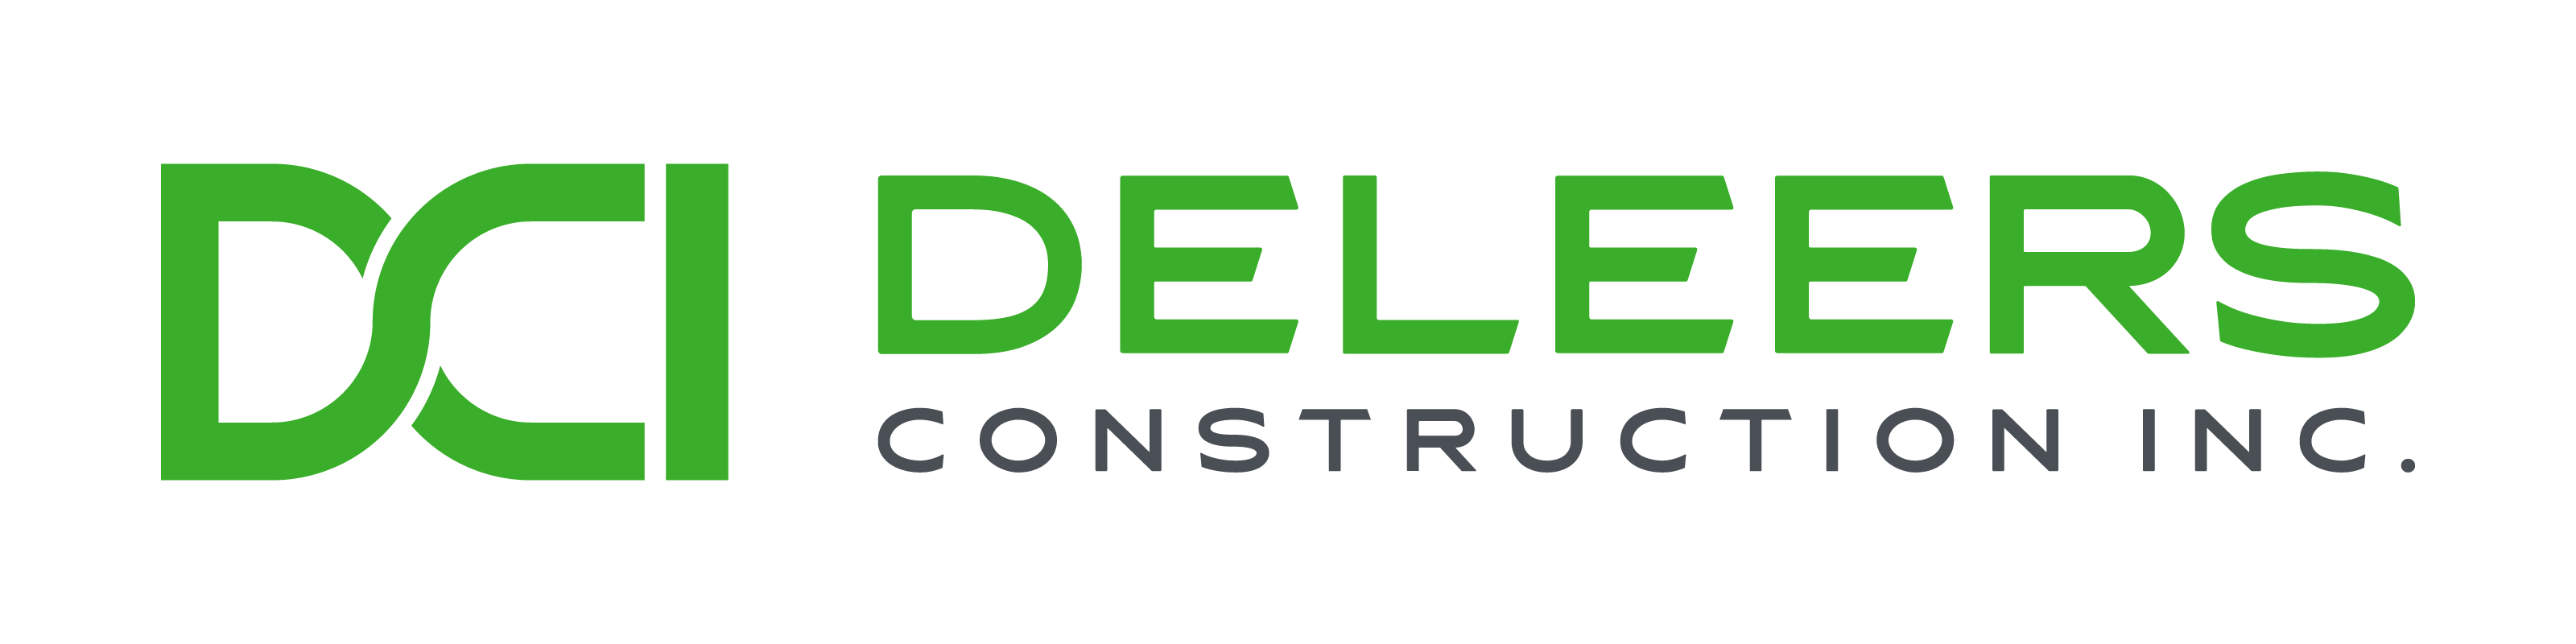 Deleers Construction